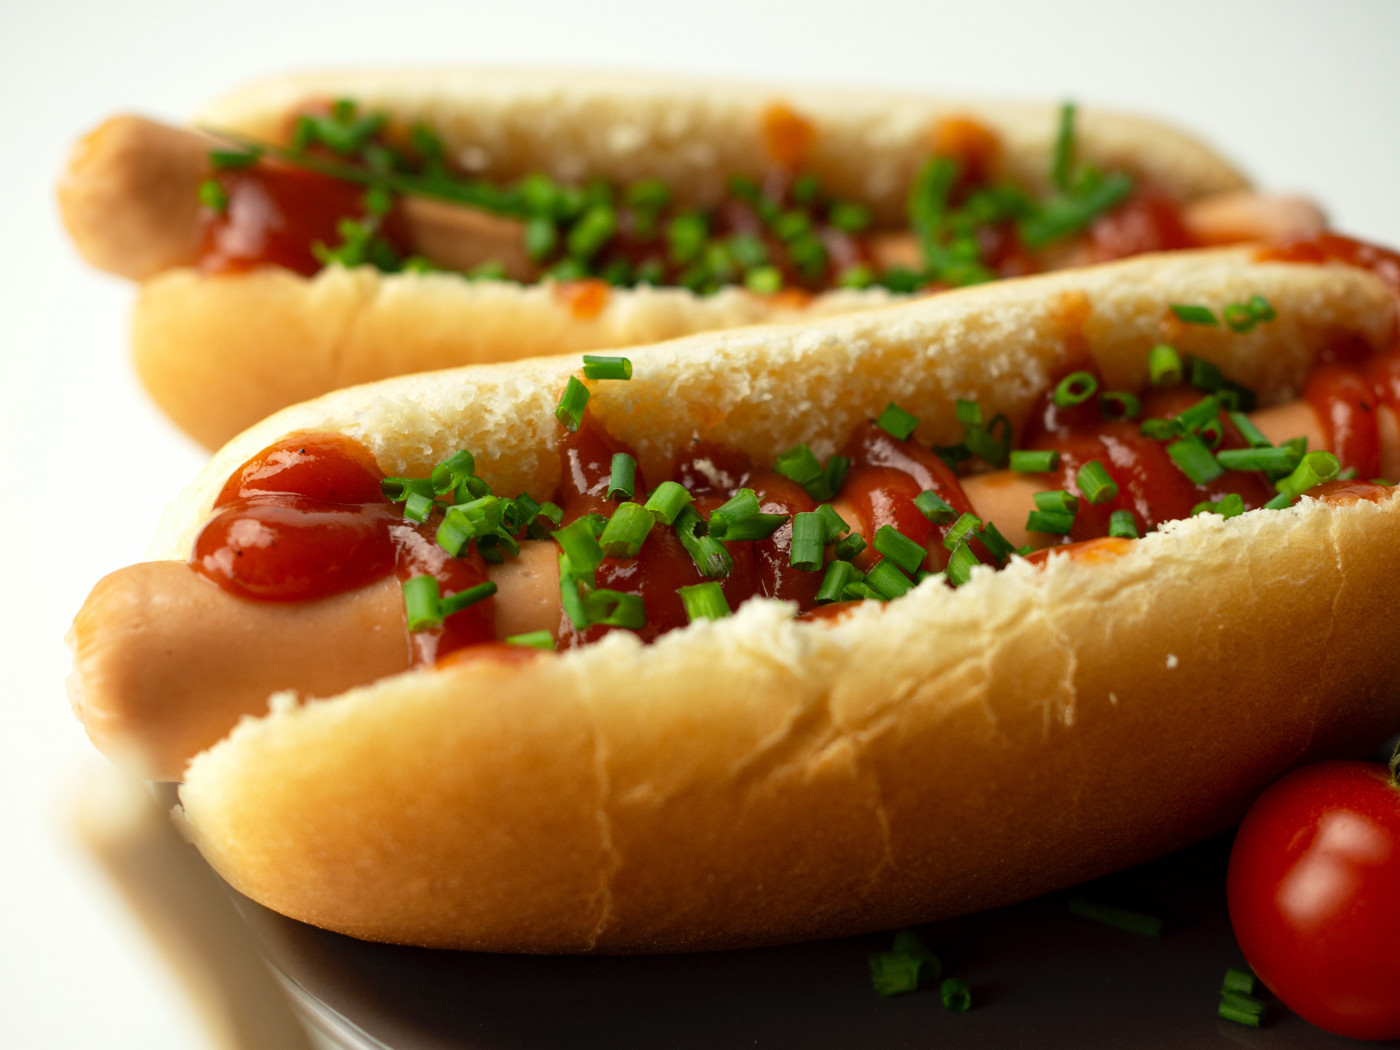 Imagem com dois sanduíches do tipo hot dog